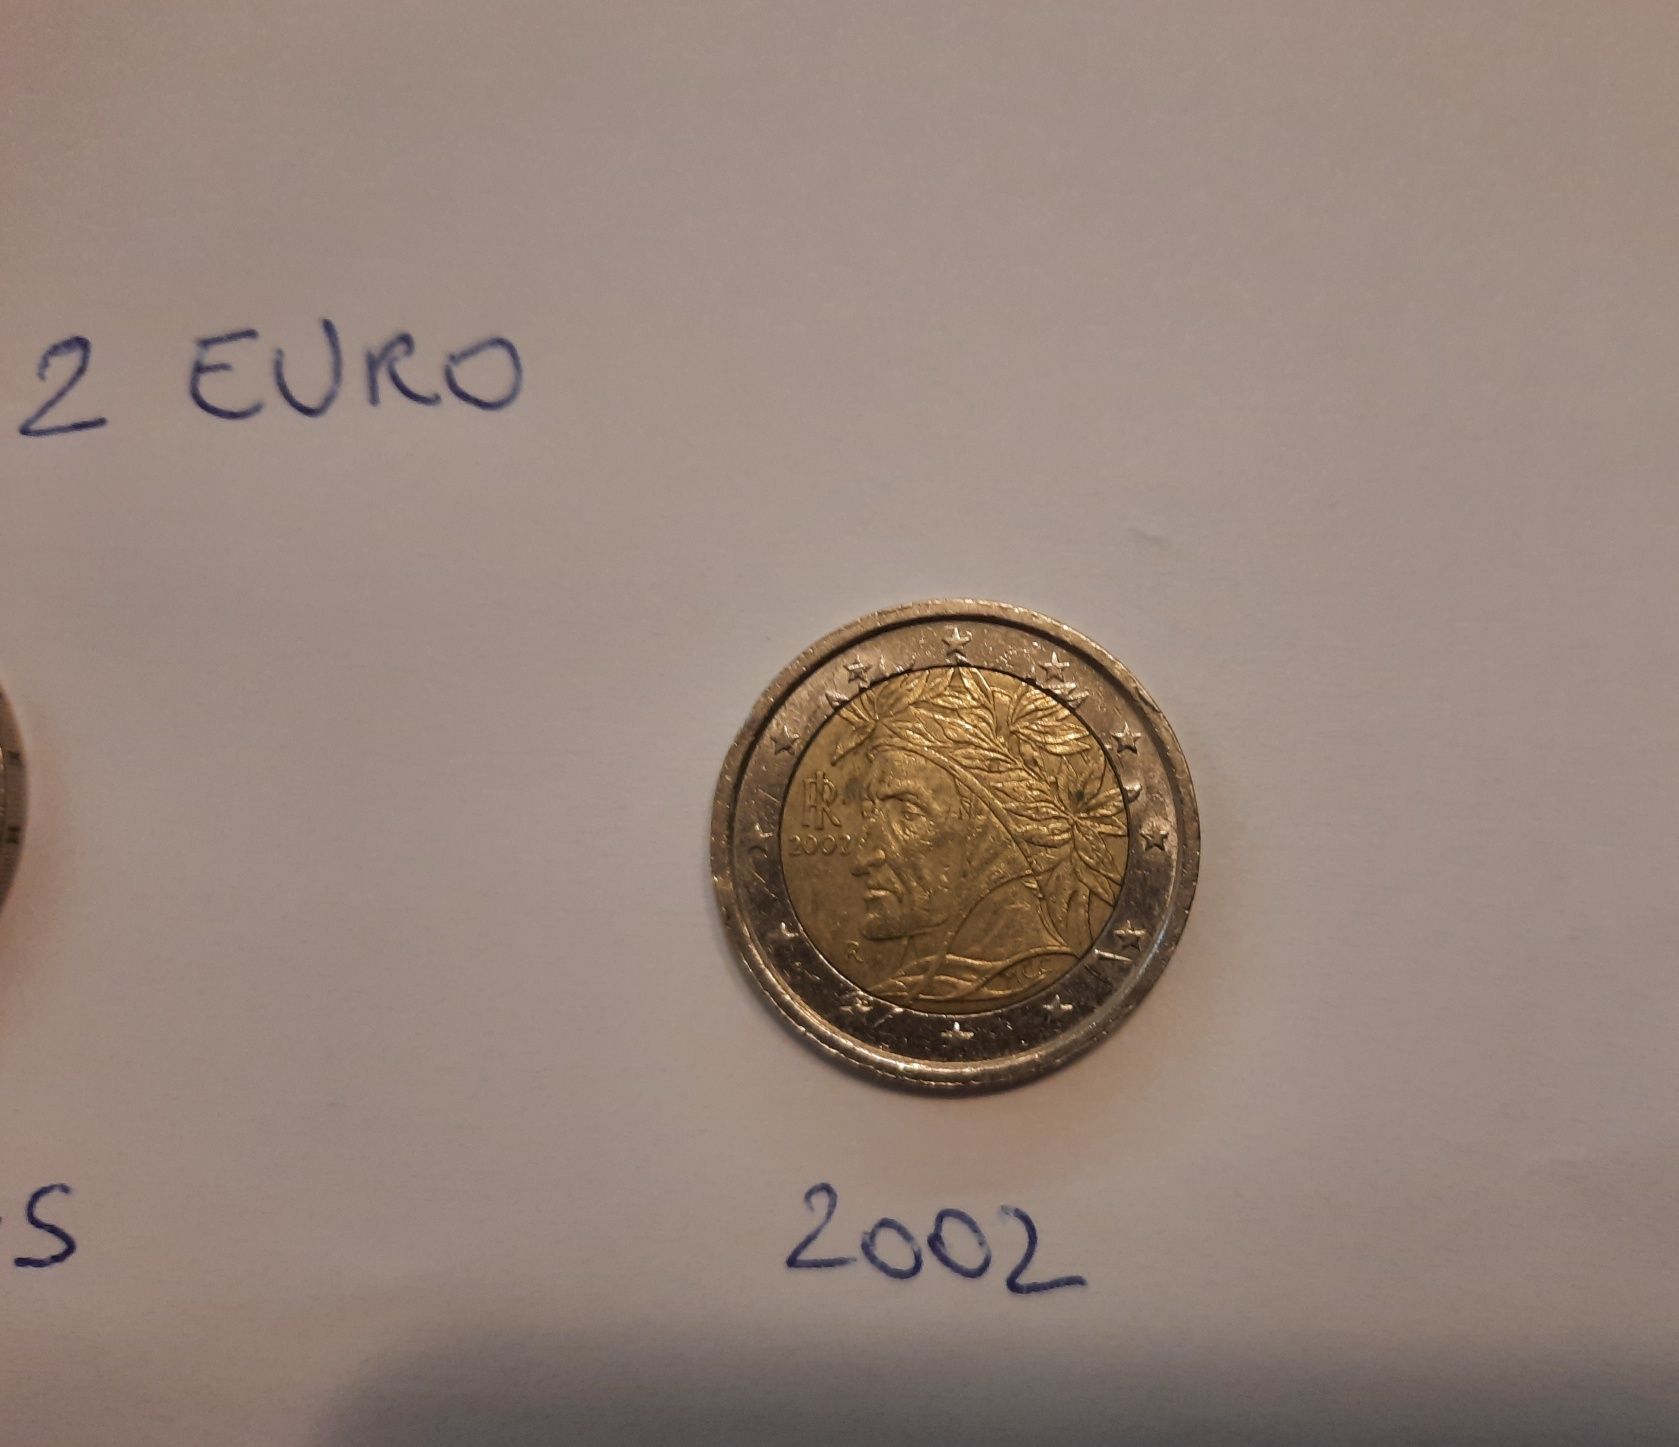 Monede de colecție 2 euro 2002 și 1 euro